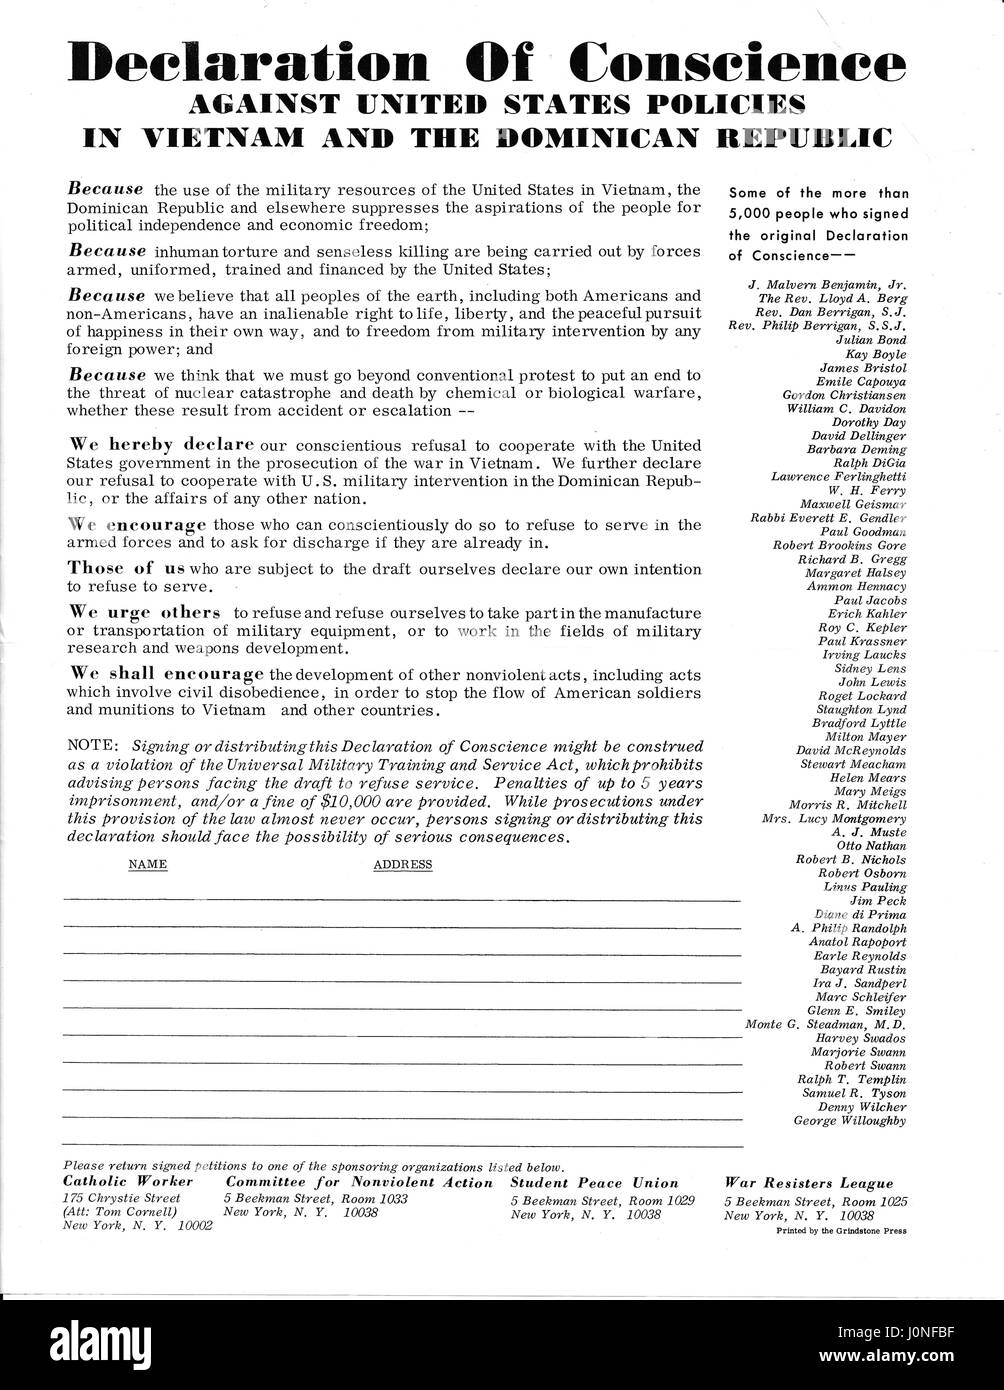 Eine Vietnam-Krieg-Ära-Broschüre mit dem Titel "Erklärung von gewissen" Befürworter, die Bürgerinnen und Bürger die Erklärung in ein Versprechen unterzeichnet, im Militär zu dienen oder den Krieg zu unterstützen, in irgendeiner Art und Weise und mit ein Signup Sheet in eine der verschiedenen Protest umgewandelt werden Gruppen, 1967 zu verweigern. Stockfoto